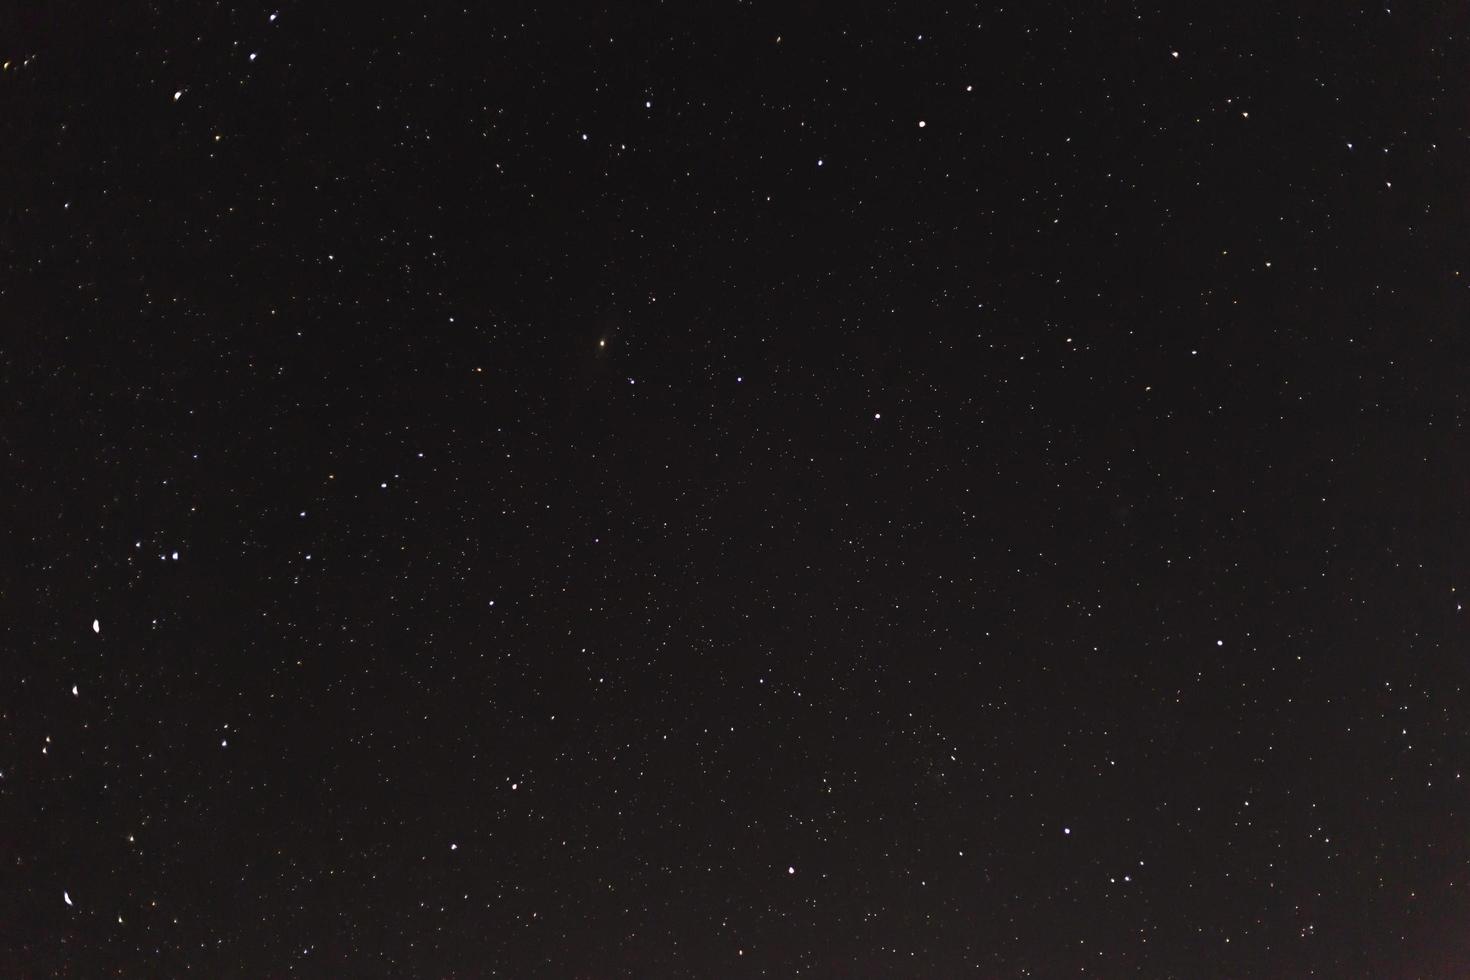 hermoso cielo nocturno, fondo cósmico, universo abstracto foto